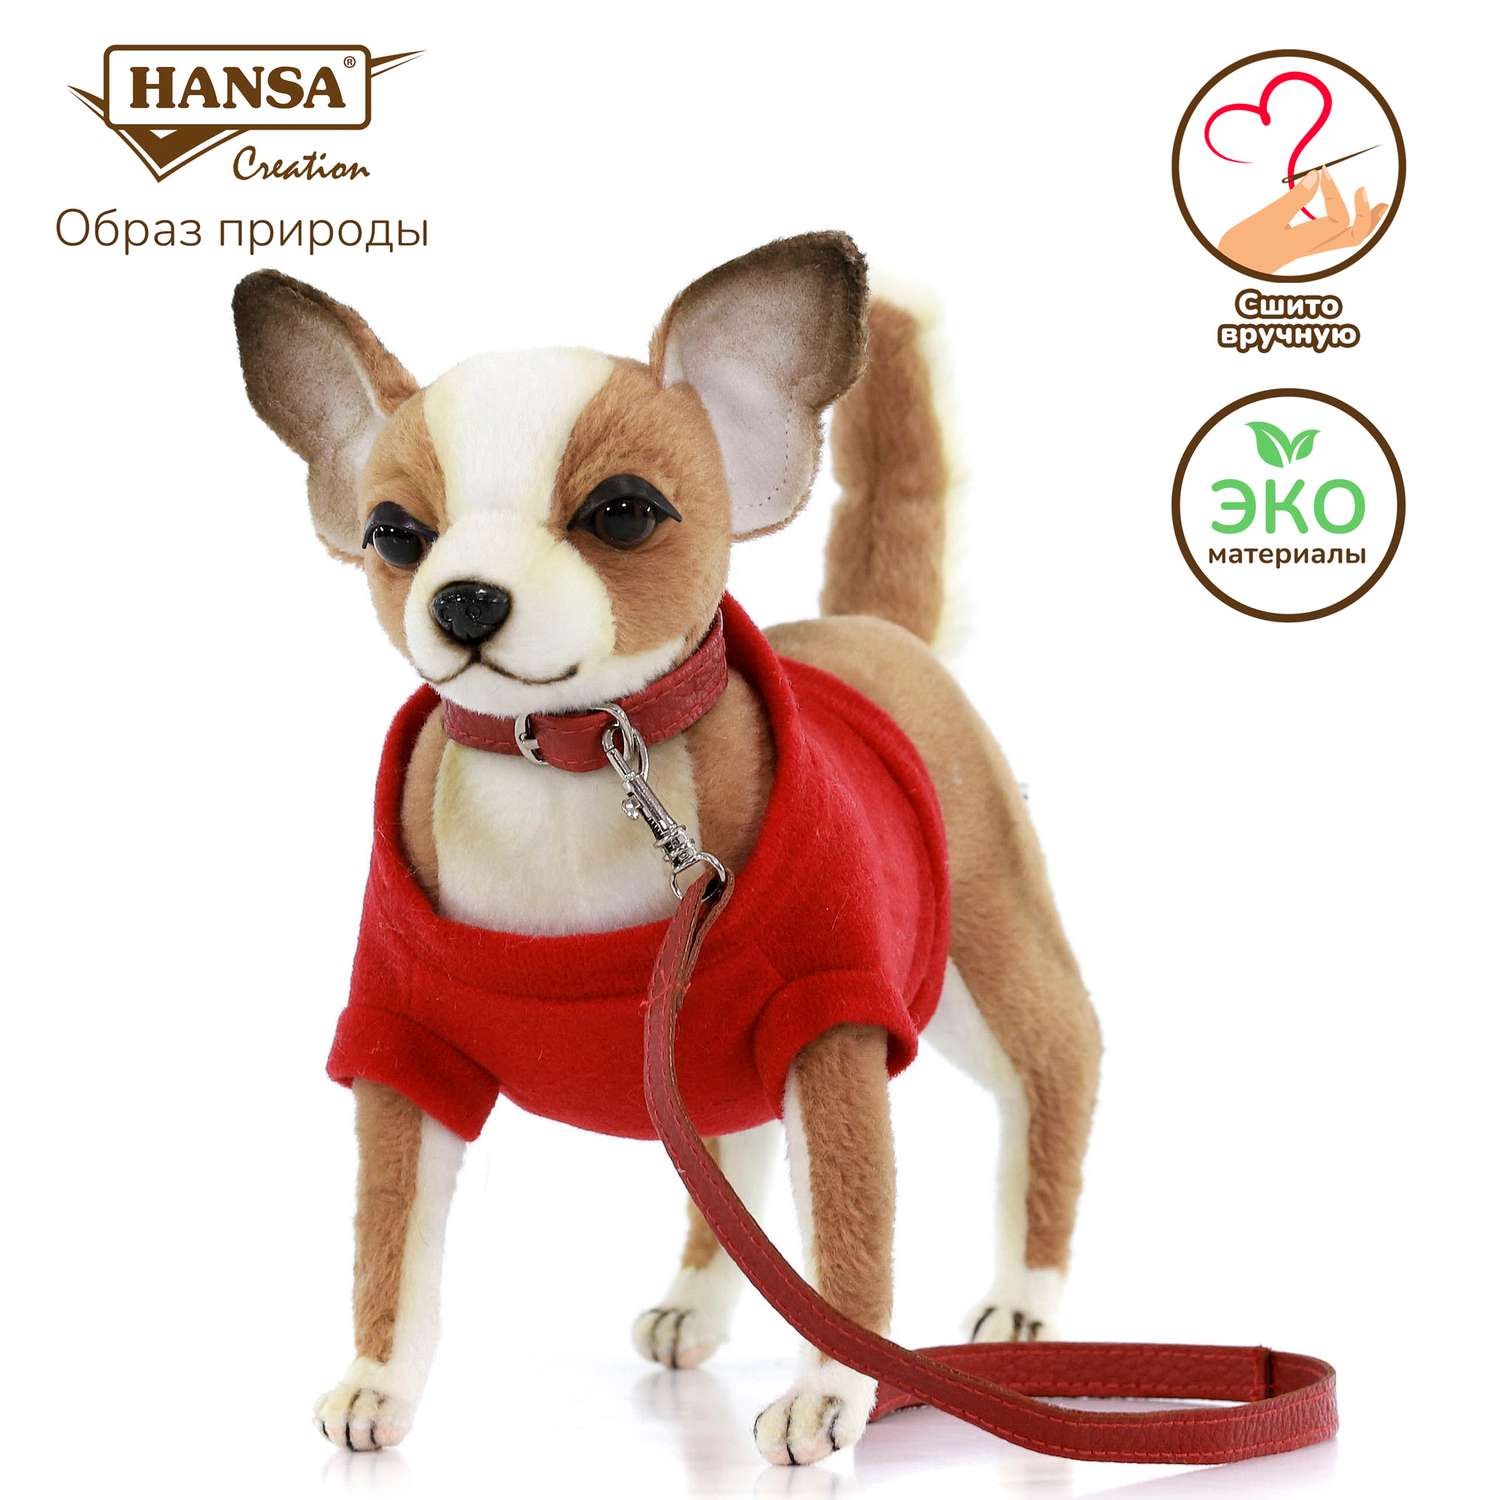 Реалистичная игрушка HANSA собака Чихуахуа в красной футболке 24 см - фото 1